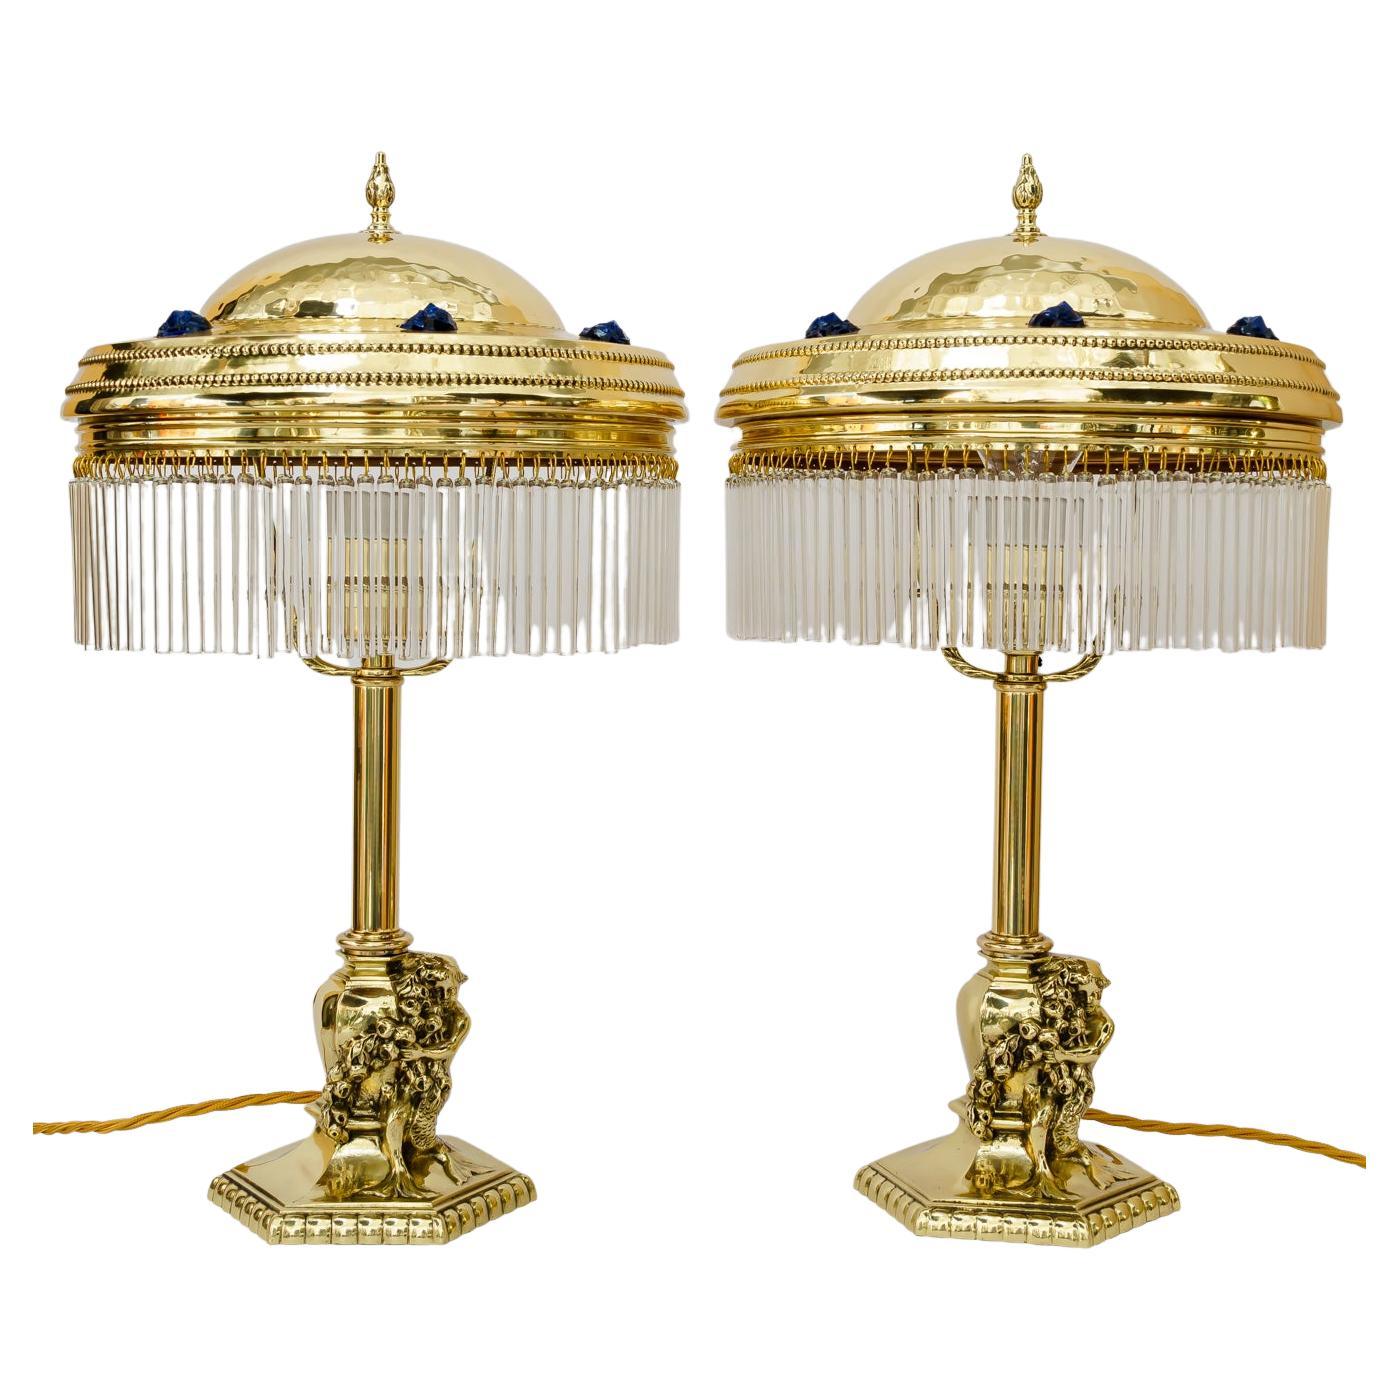 2 jugendstil table lamps vienna around 1908